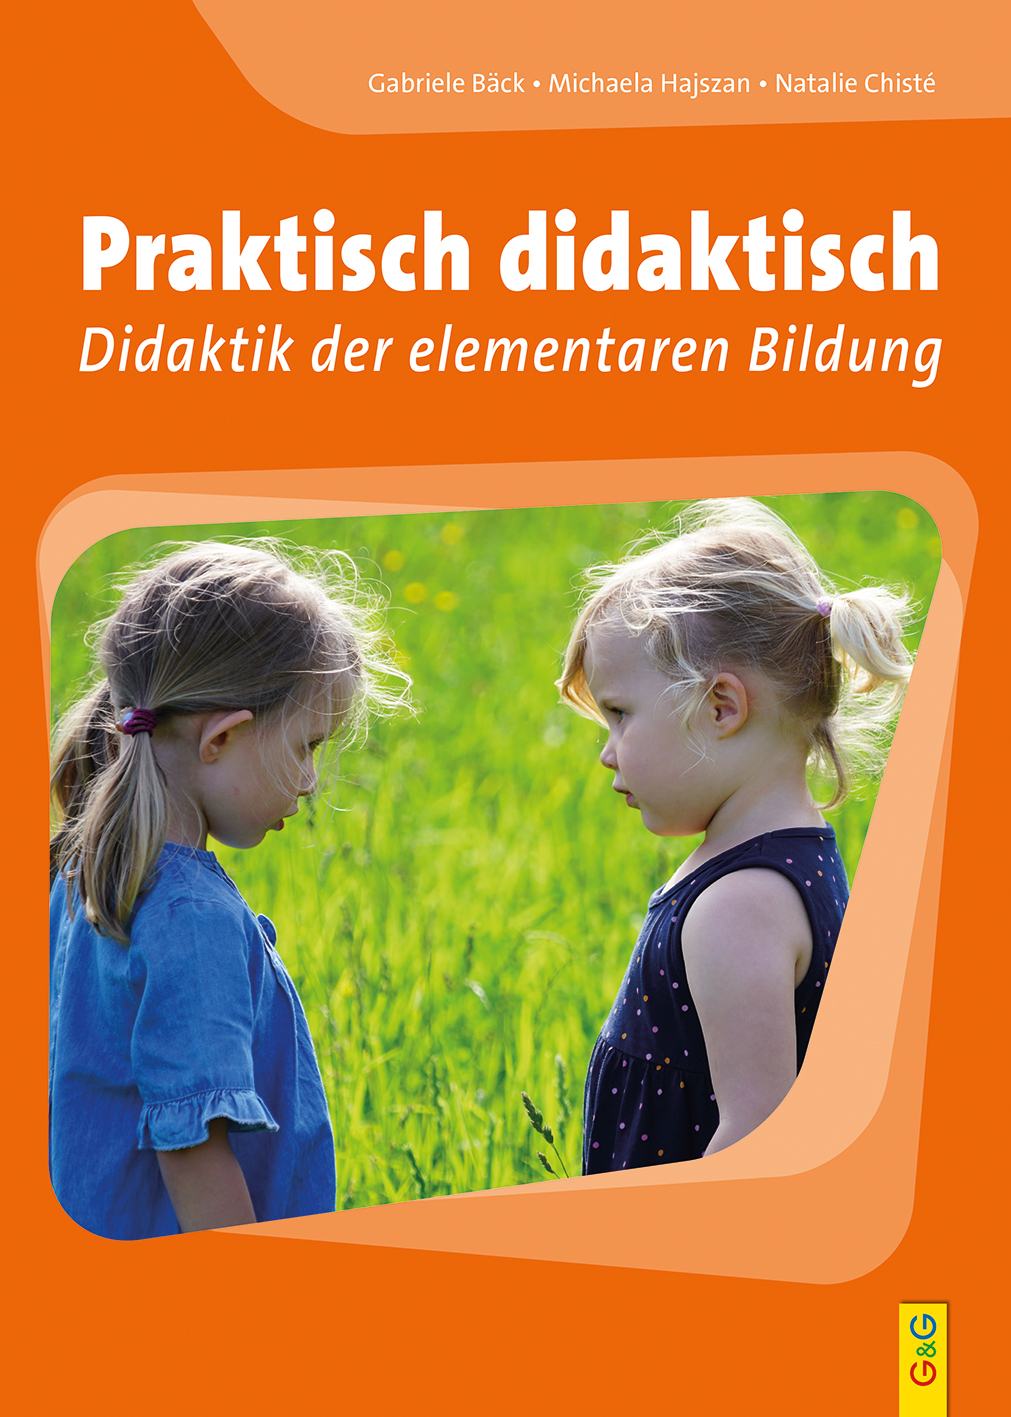 Praktisch didaktisch  Kinderbuch und Jugendbuchverlag G&G